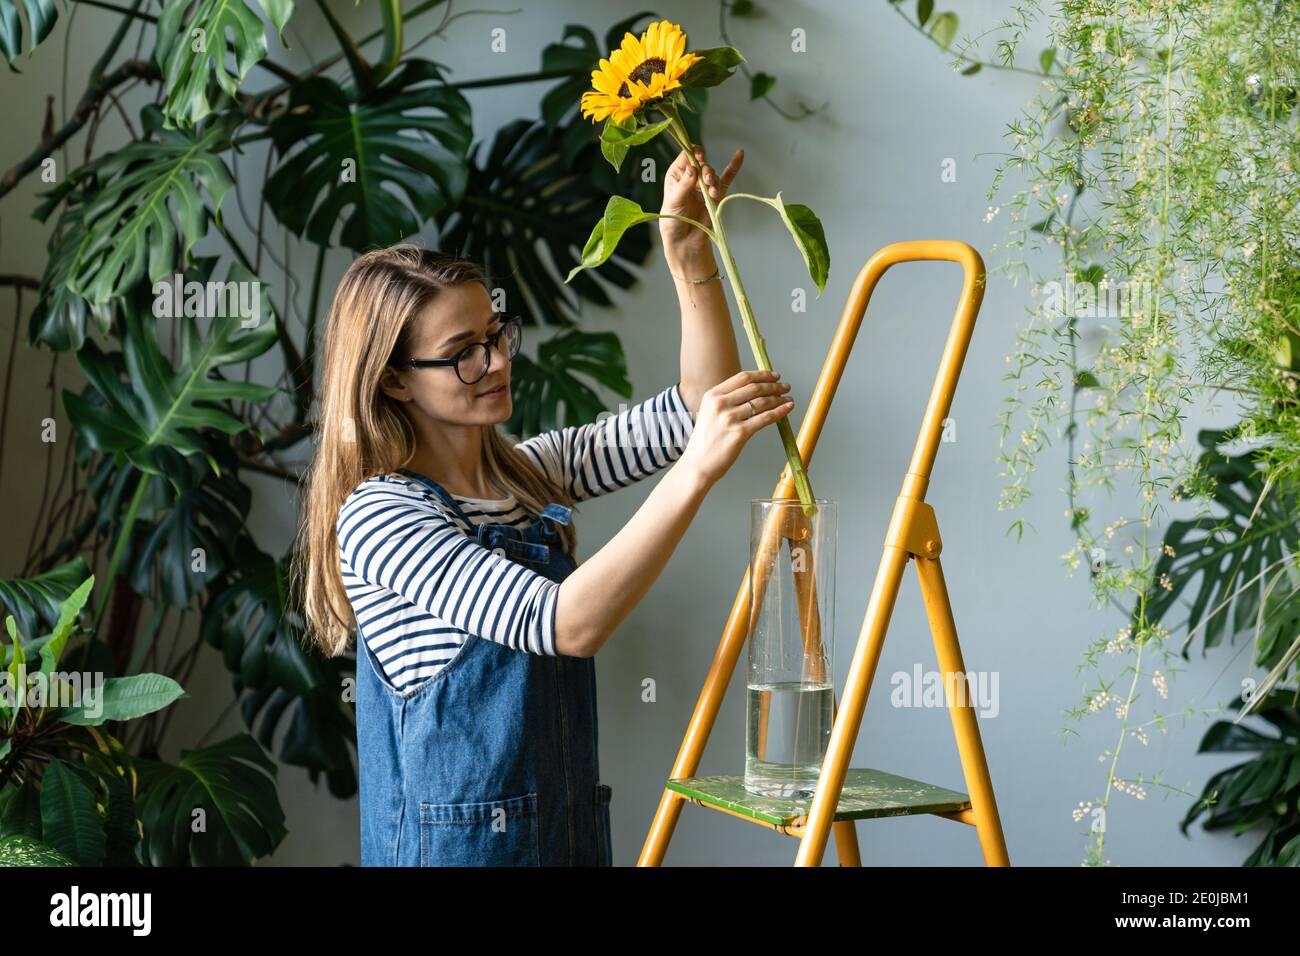 Kleinunternehmen. Floristin Frau von tropischen Pflanzen umgeben zieht eine einzelne Blume der Sonnenblume aus einer Vase, um den Stamm mit einer Schere geschnitten, stehend Stockfoto